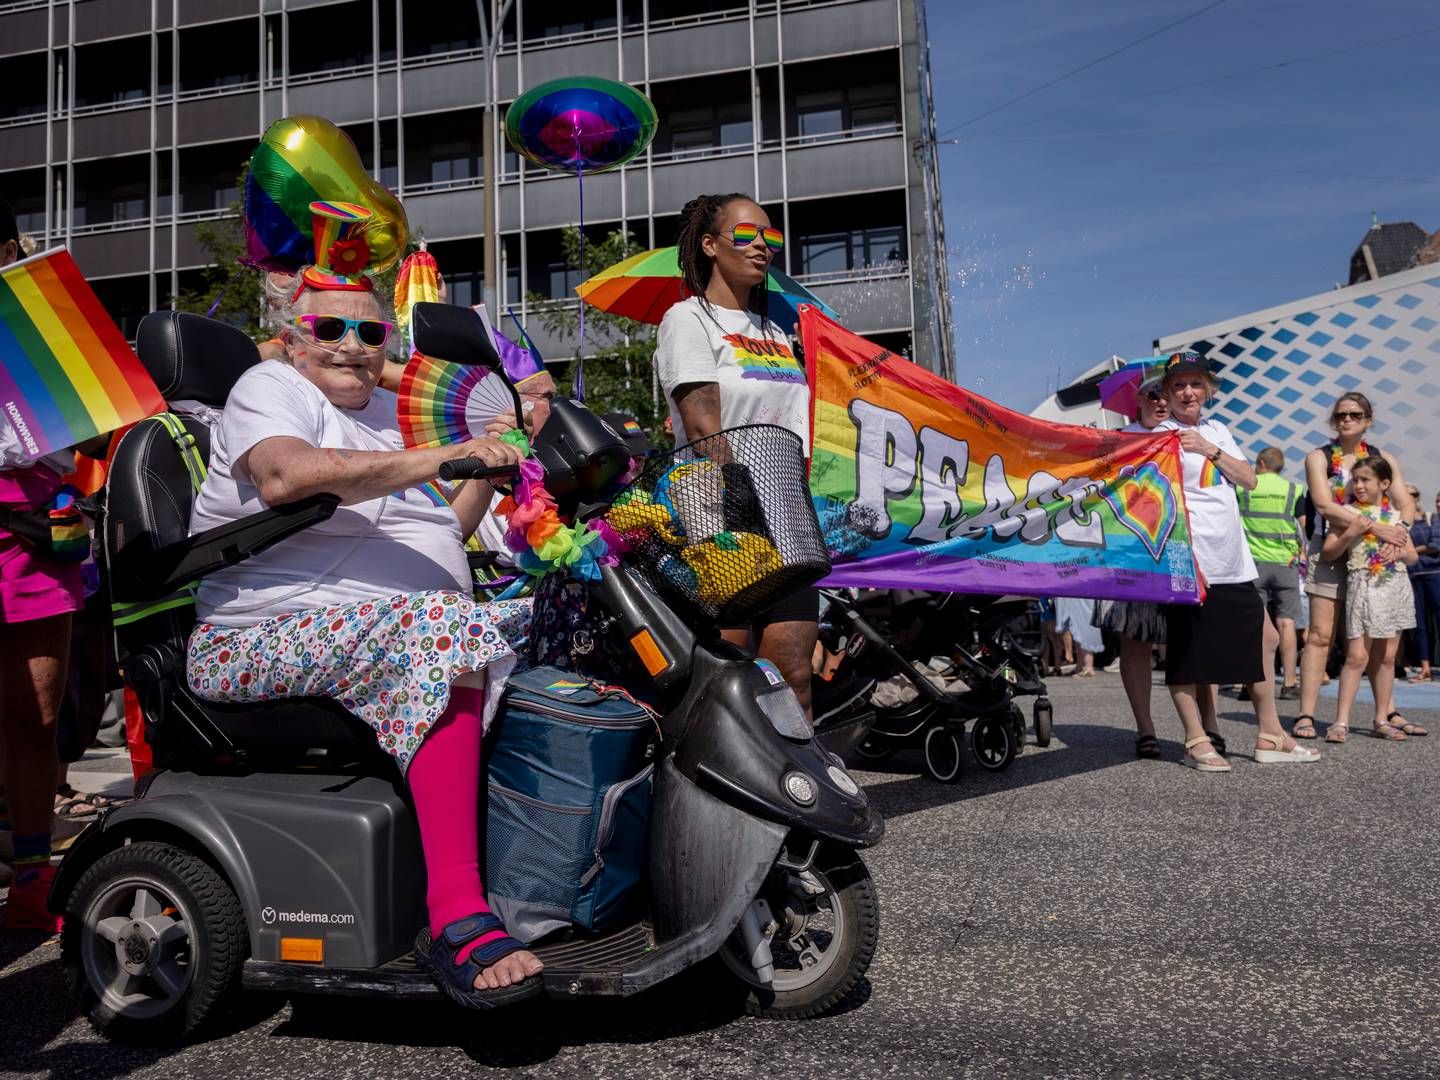 Selv om Copenhagen Pride er kommet med "uklare signaler", vil Finansforbundet også gå med til paraden i 2024, bekræfter næstformand i Finansforbundet, Steen Lund Olsen. | Foto: Mads Nissen/Ritzau Scanpix